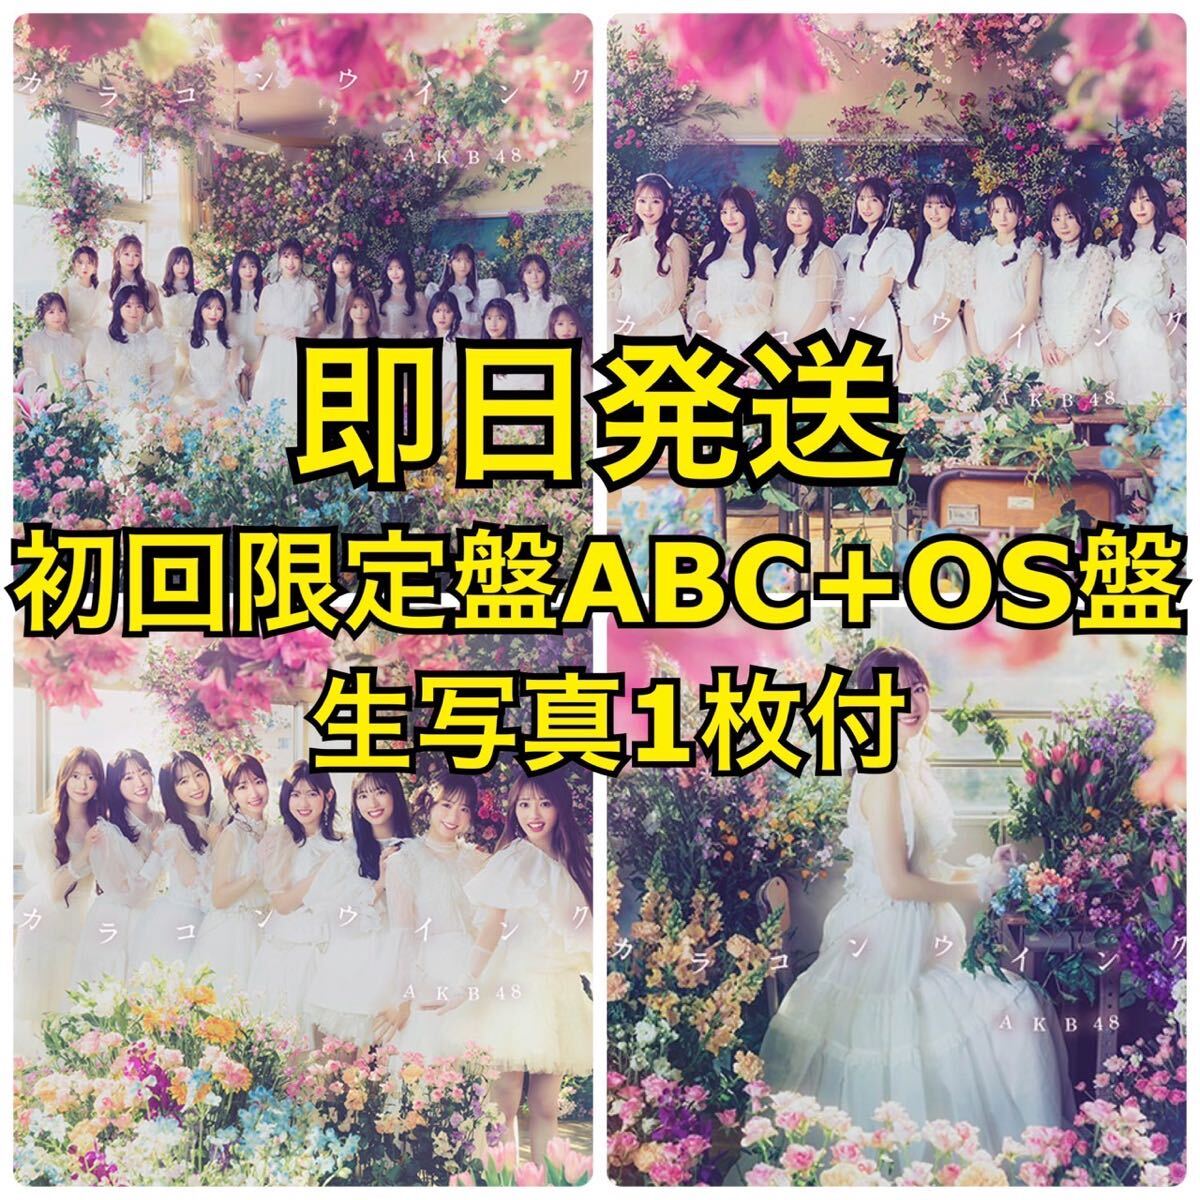 【送料無料・生写真付】AKB48 63rd シングル カラコンウインク 初回限定盤 TypeA+B+C+OS盤 4枚セット CD+Blu-ray_画像1